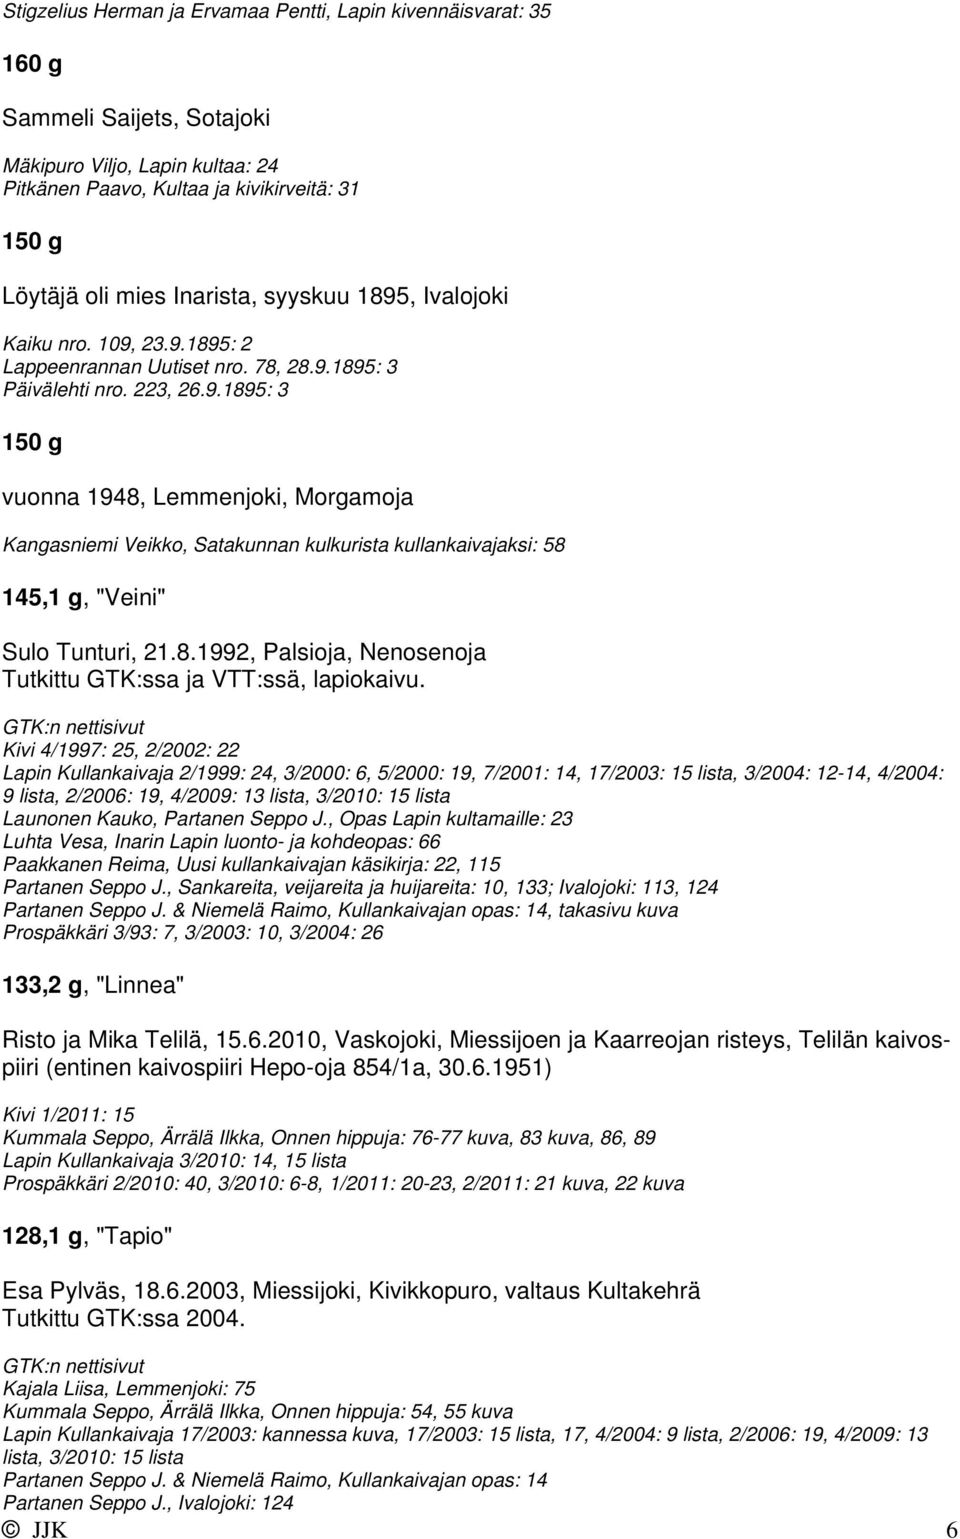 8.1992, Palsioja, Nenosenoja Tutkittu GTK:ssa ja VTT:ssä, lapiokaivu.